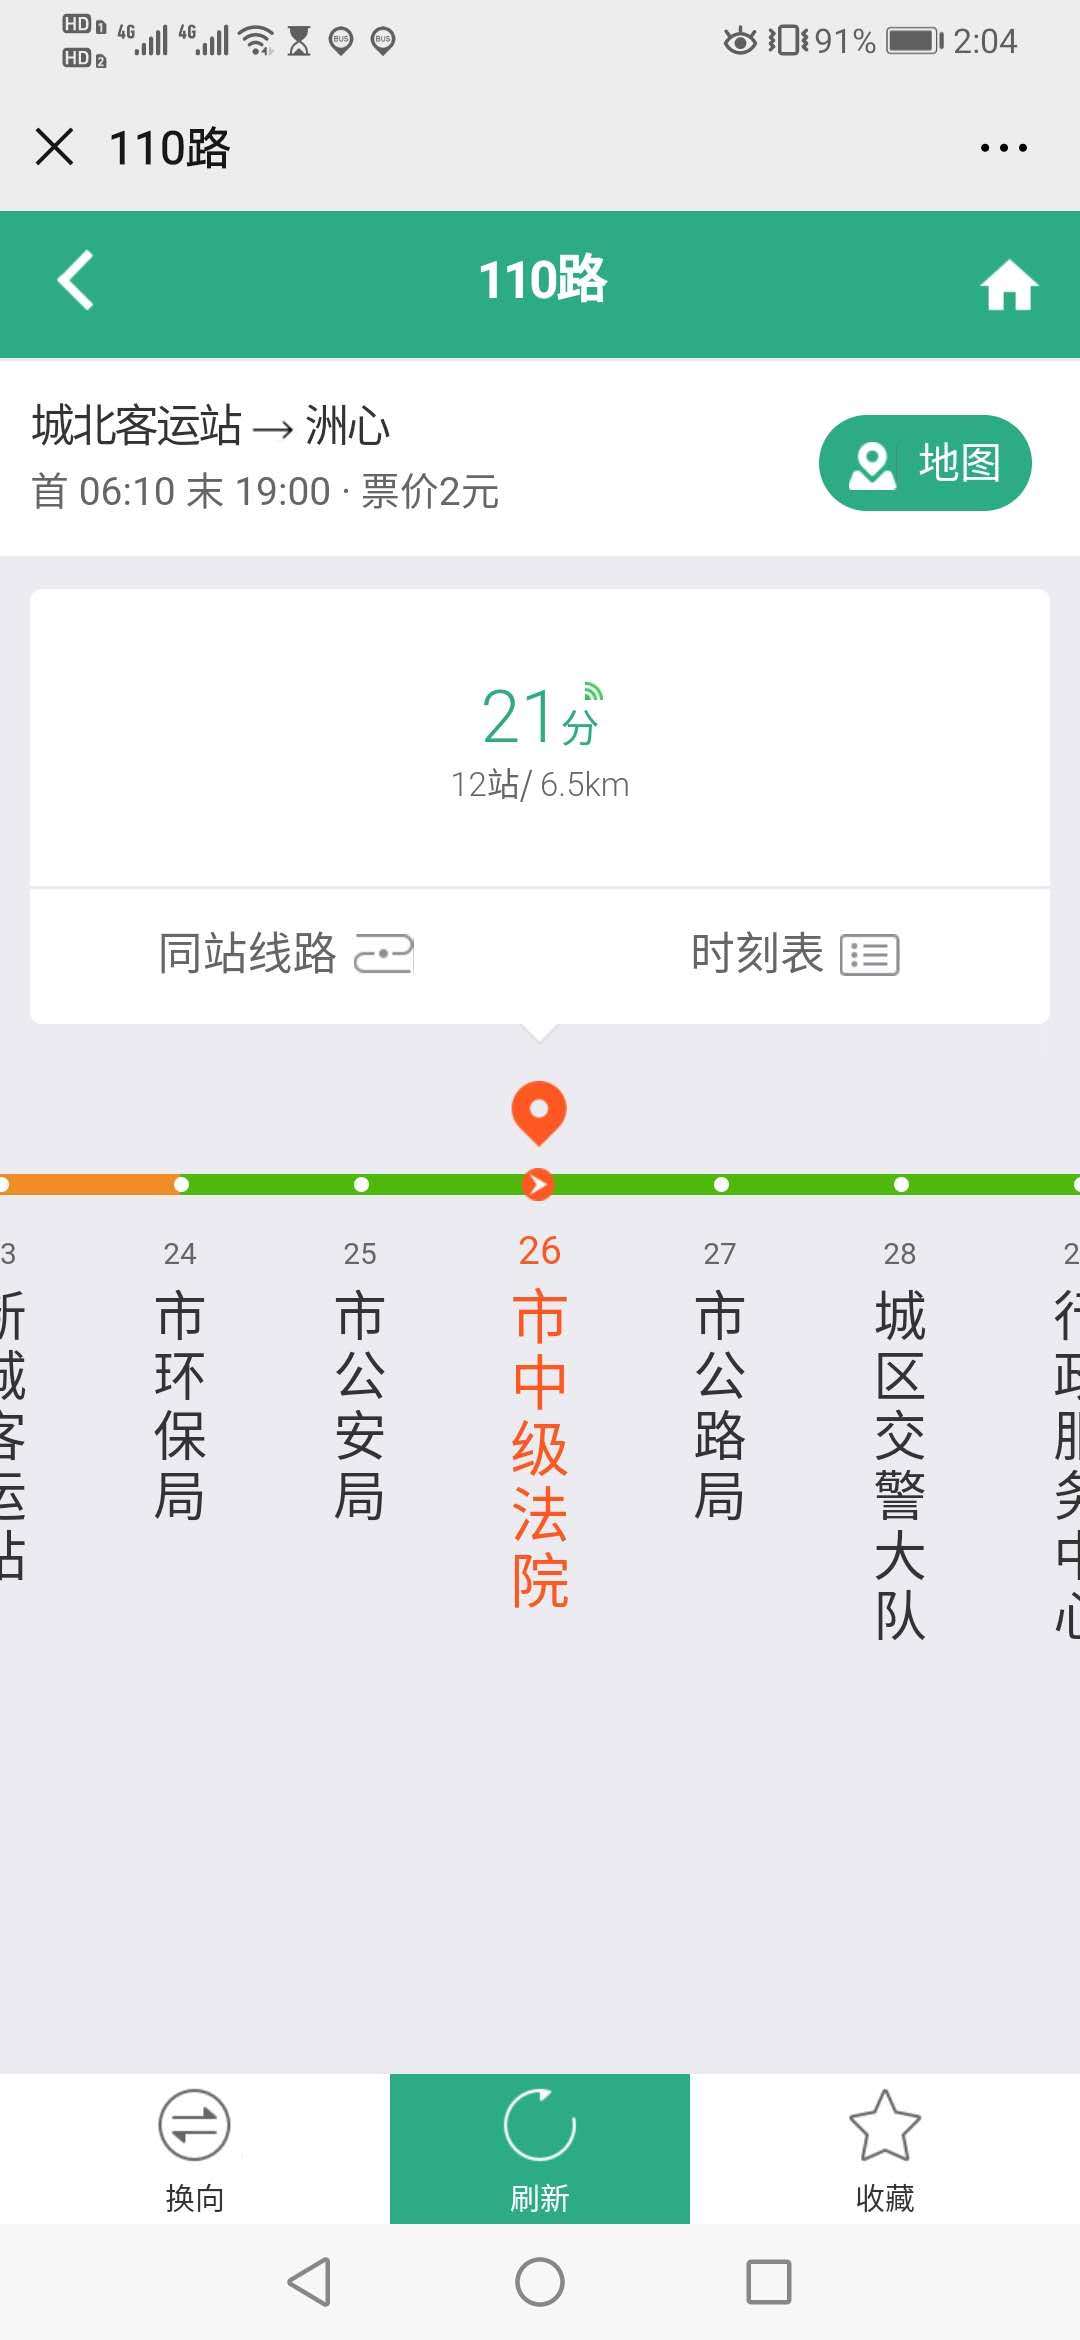 通过“清远粤运”微信公众号可查询实时公交。